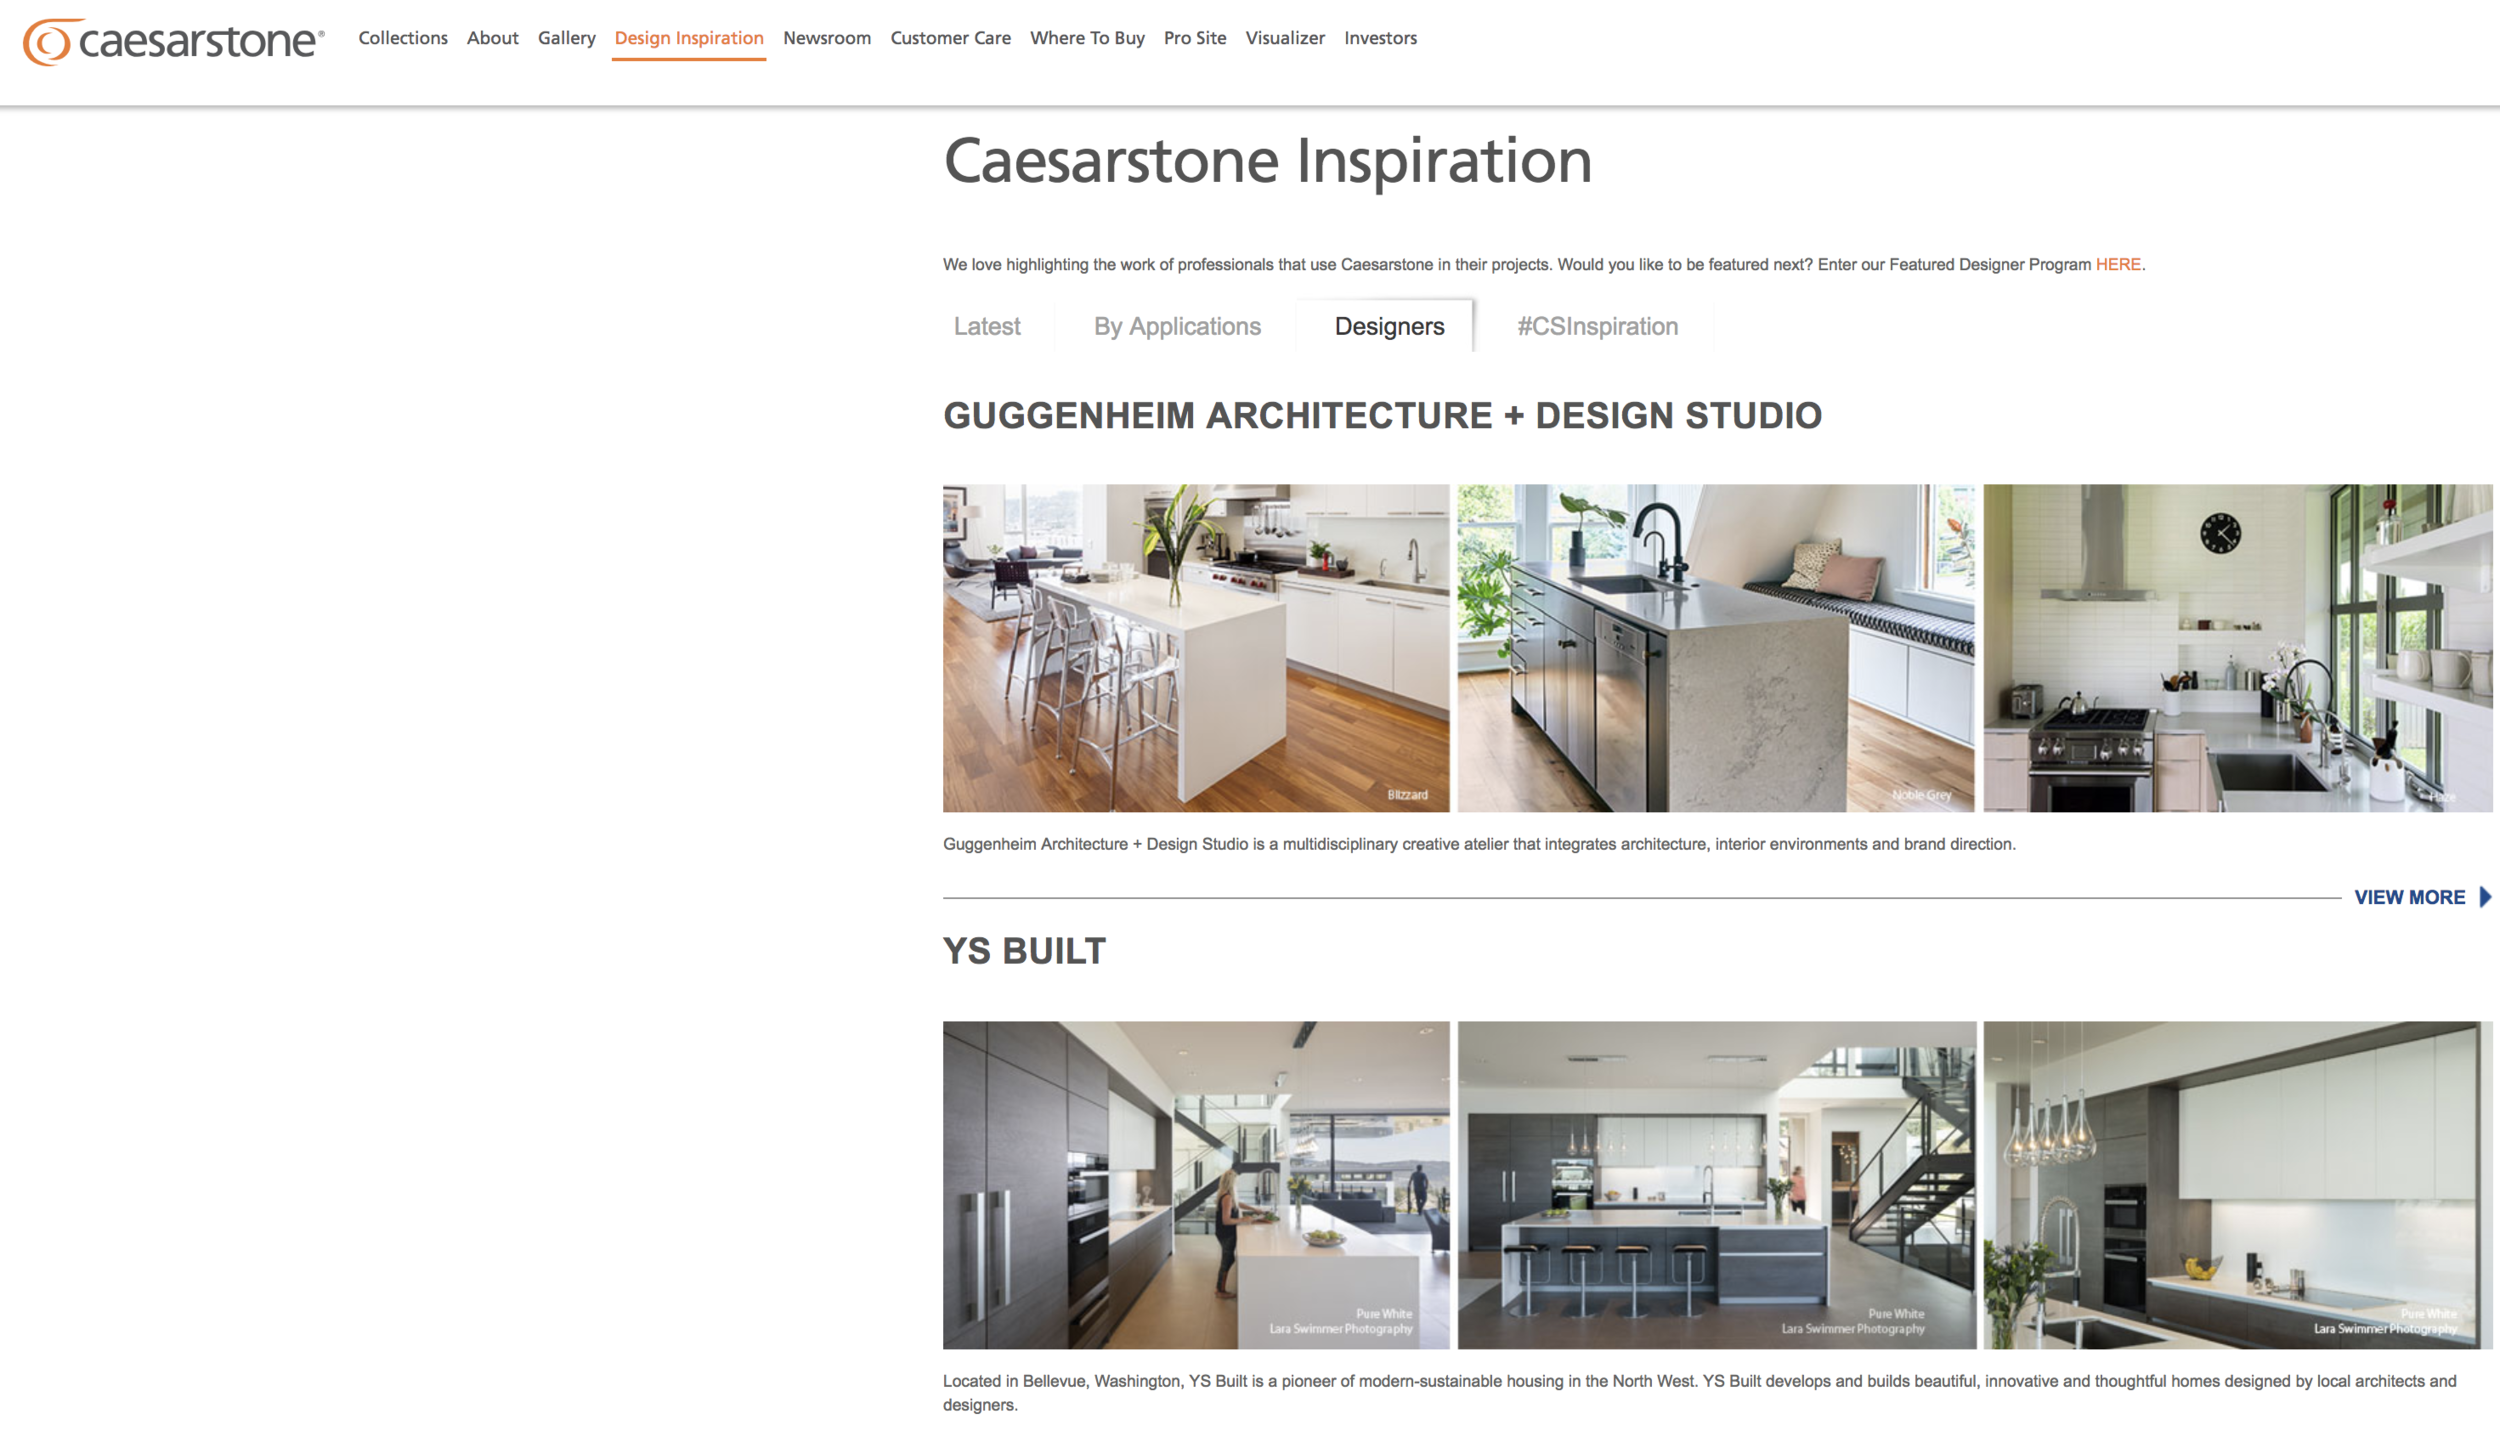 Caesarstone supports interior designers